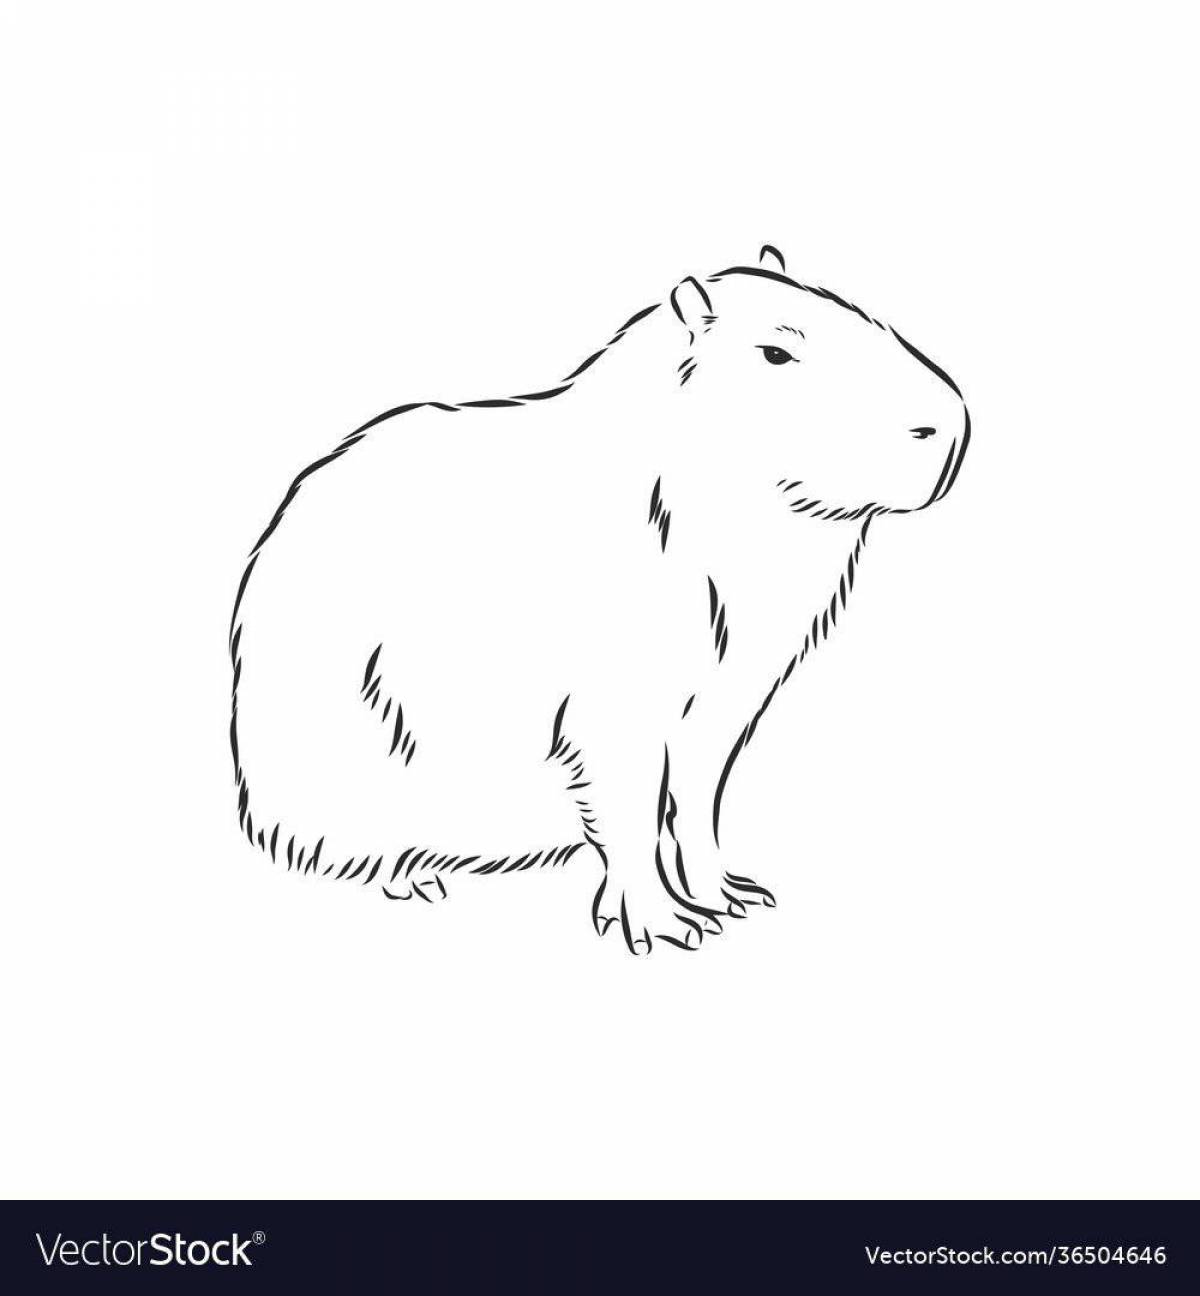 A funny capybara coloring book